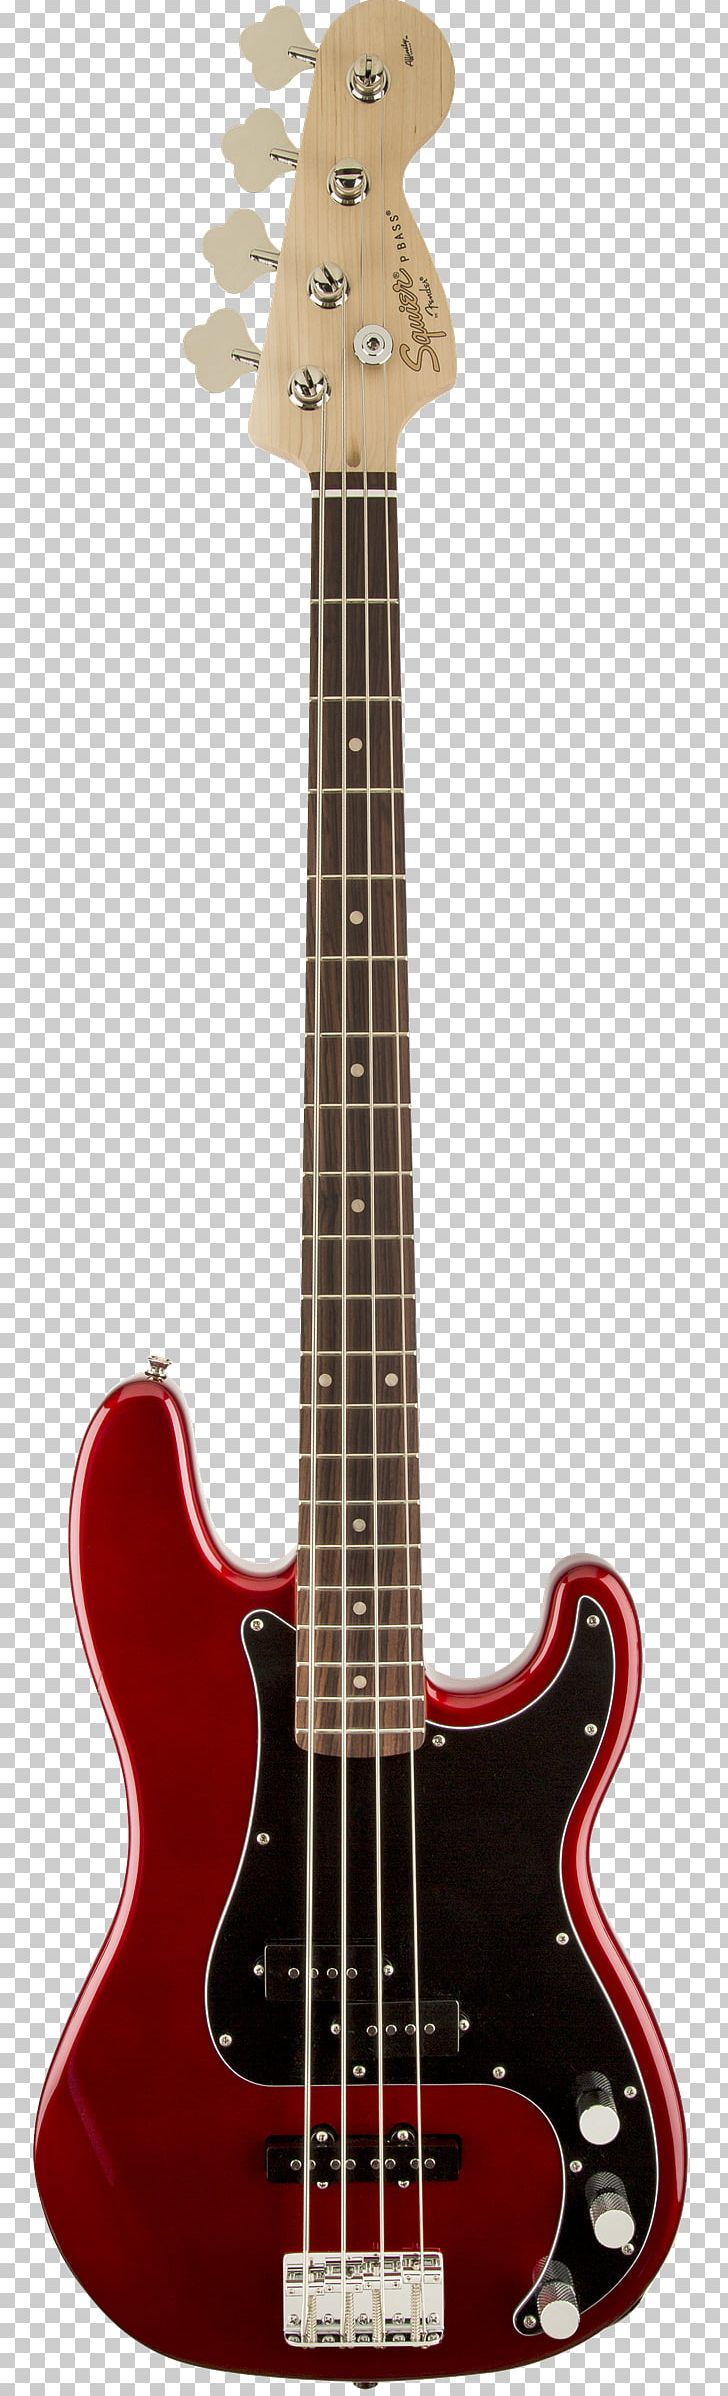 Fender Precision Bass Fender Mustang Bass Fender Jaguar Bass Squier Bass Guitar PNG, Clipart, Double Bass, Guitar Accessory, Jazz Guitarist, Metallic, Music Free PNG Download